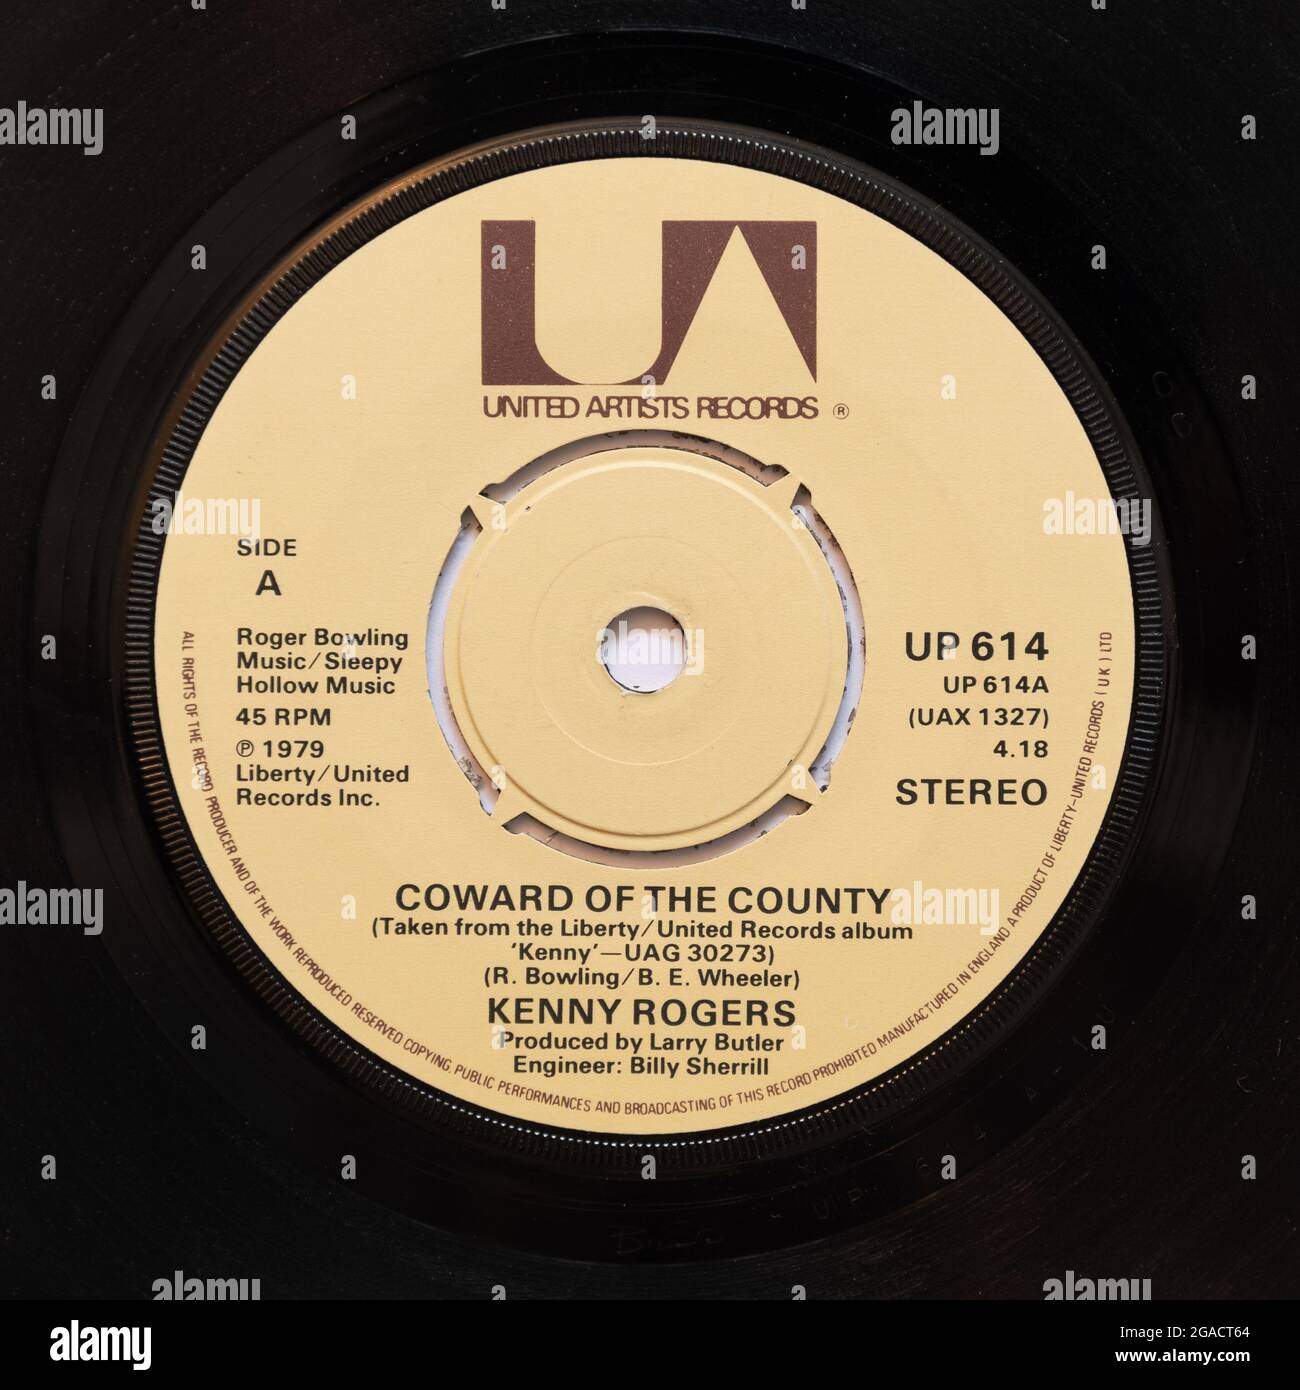 Coward du comté par Kenny Rogers, une photo du record de 7' de vinyle à 45 tr/min en couverture Banque D'Images